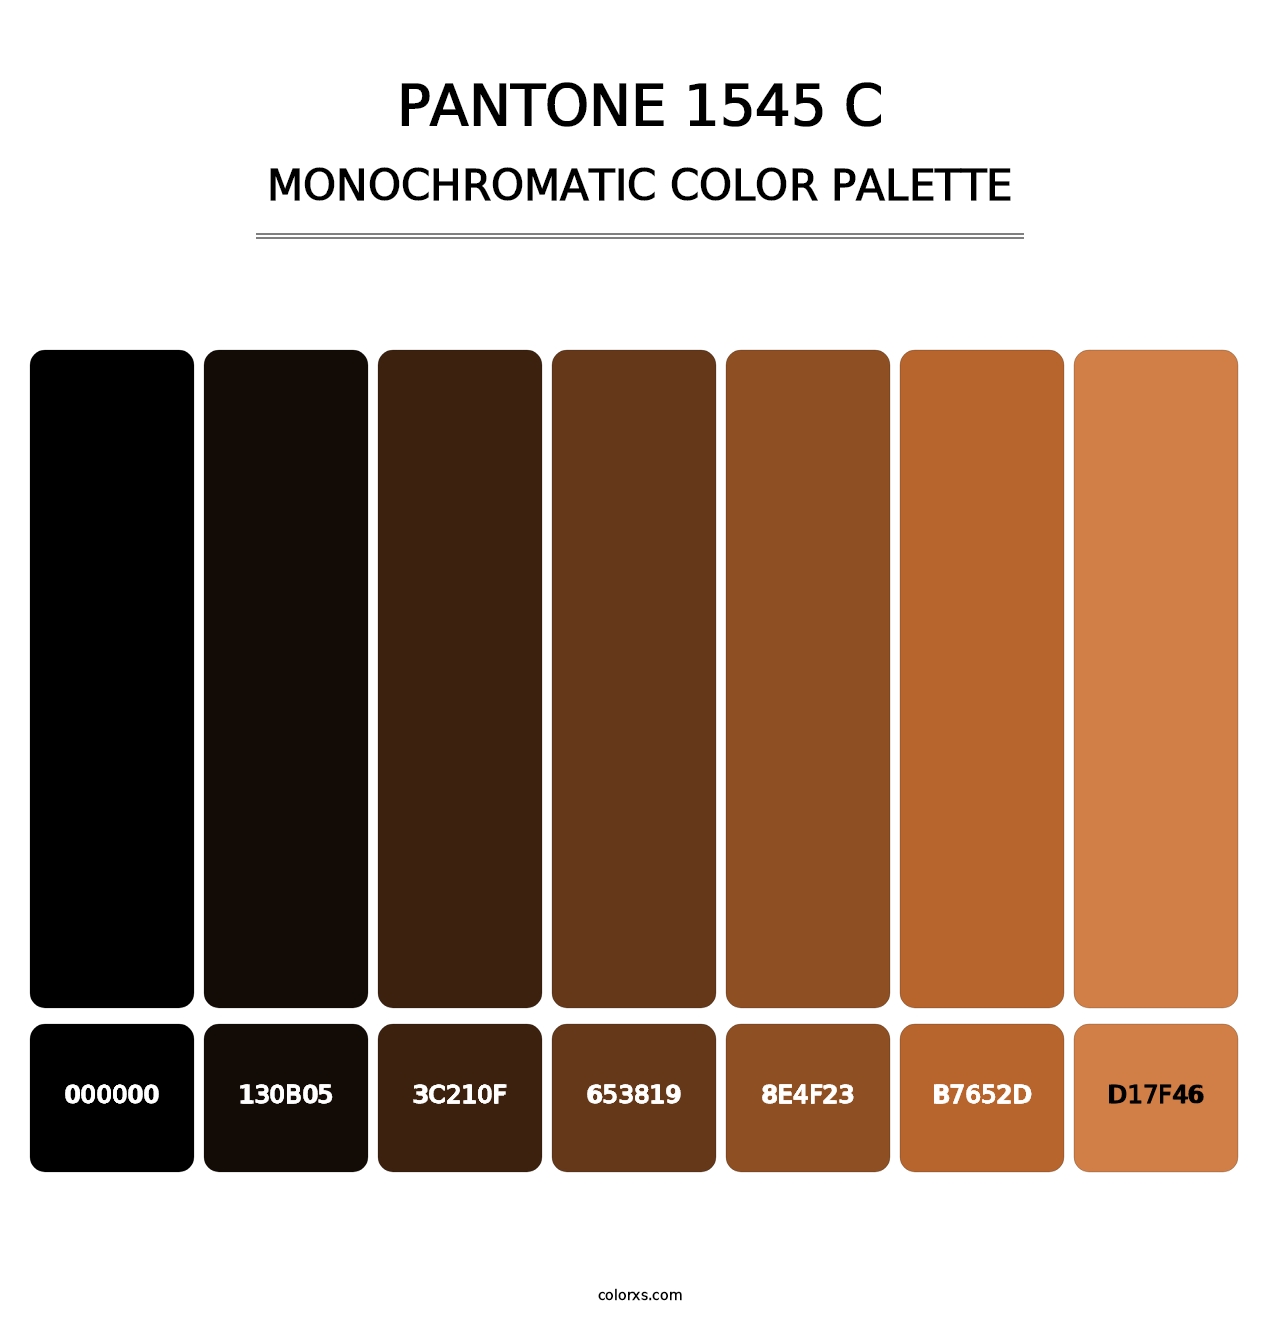 PANTONE 1545 C - Monochromatic Color Palette